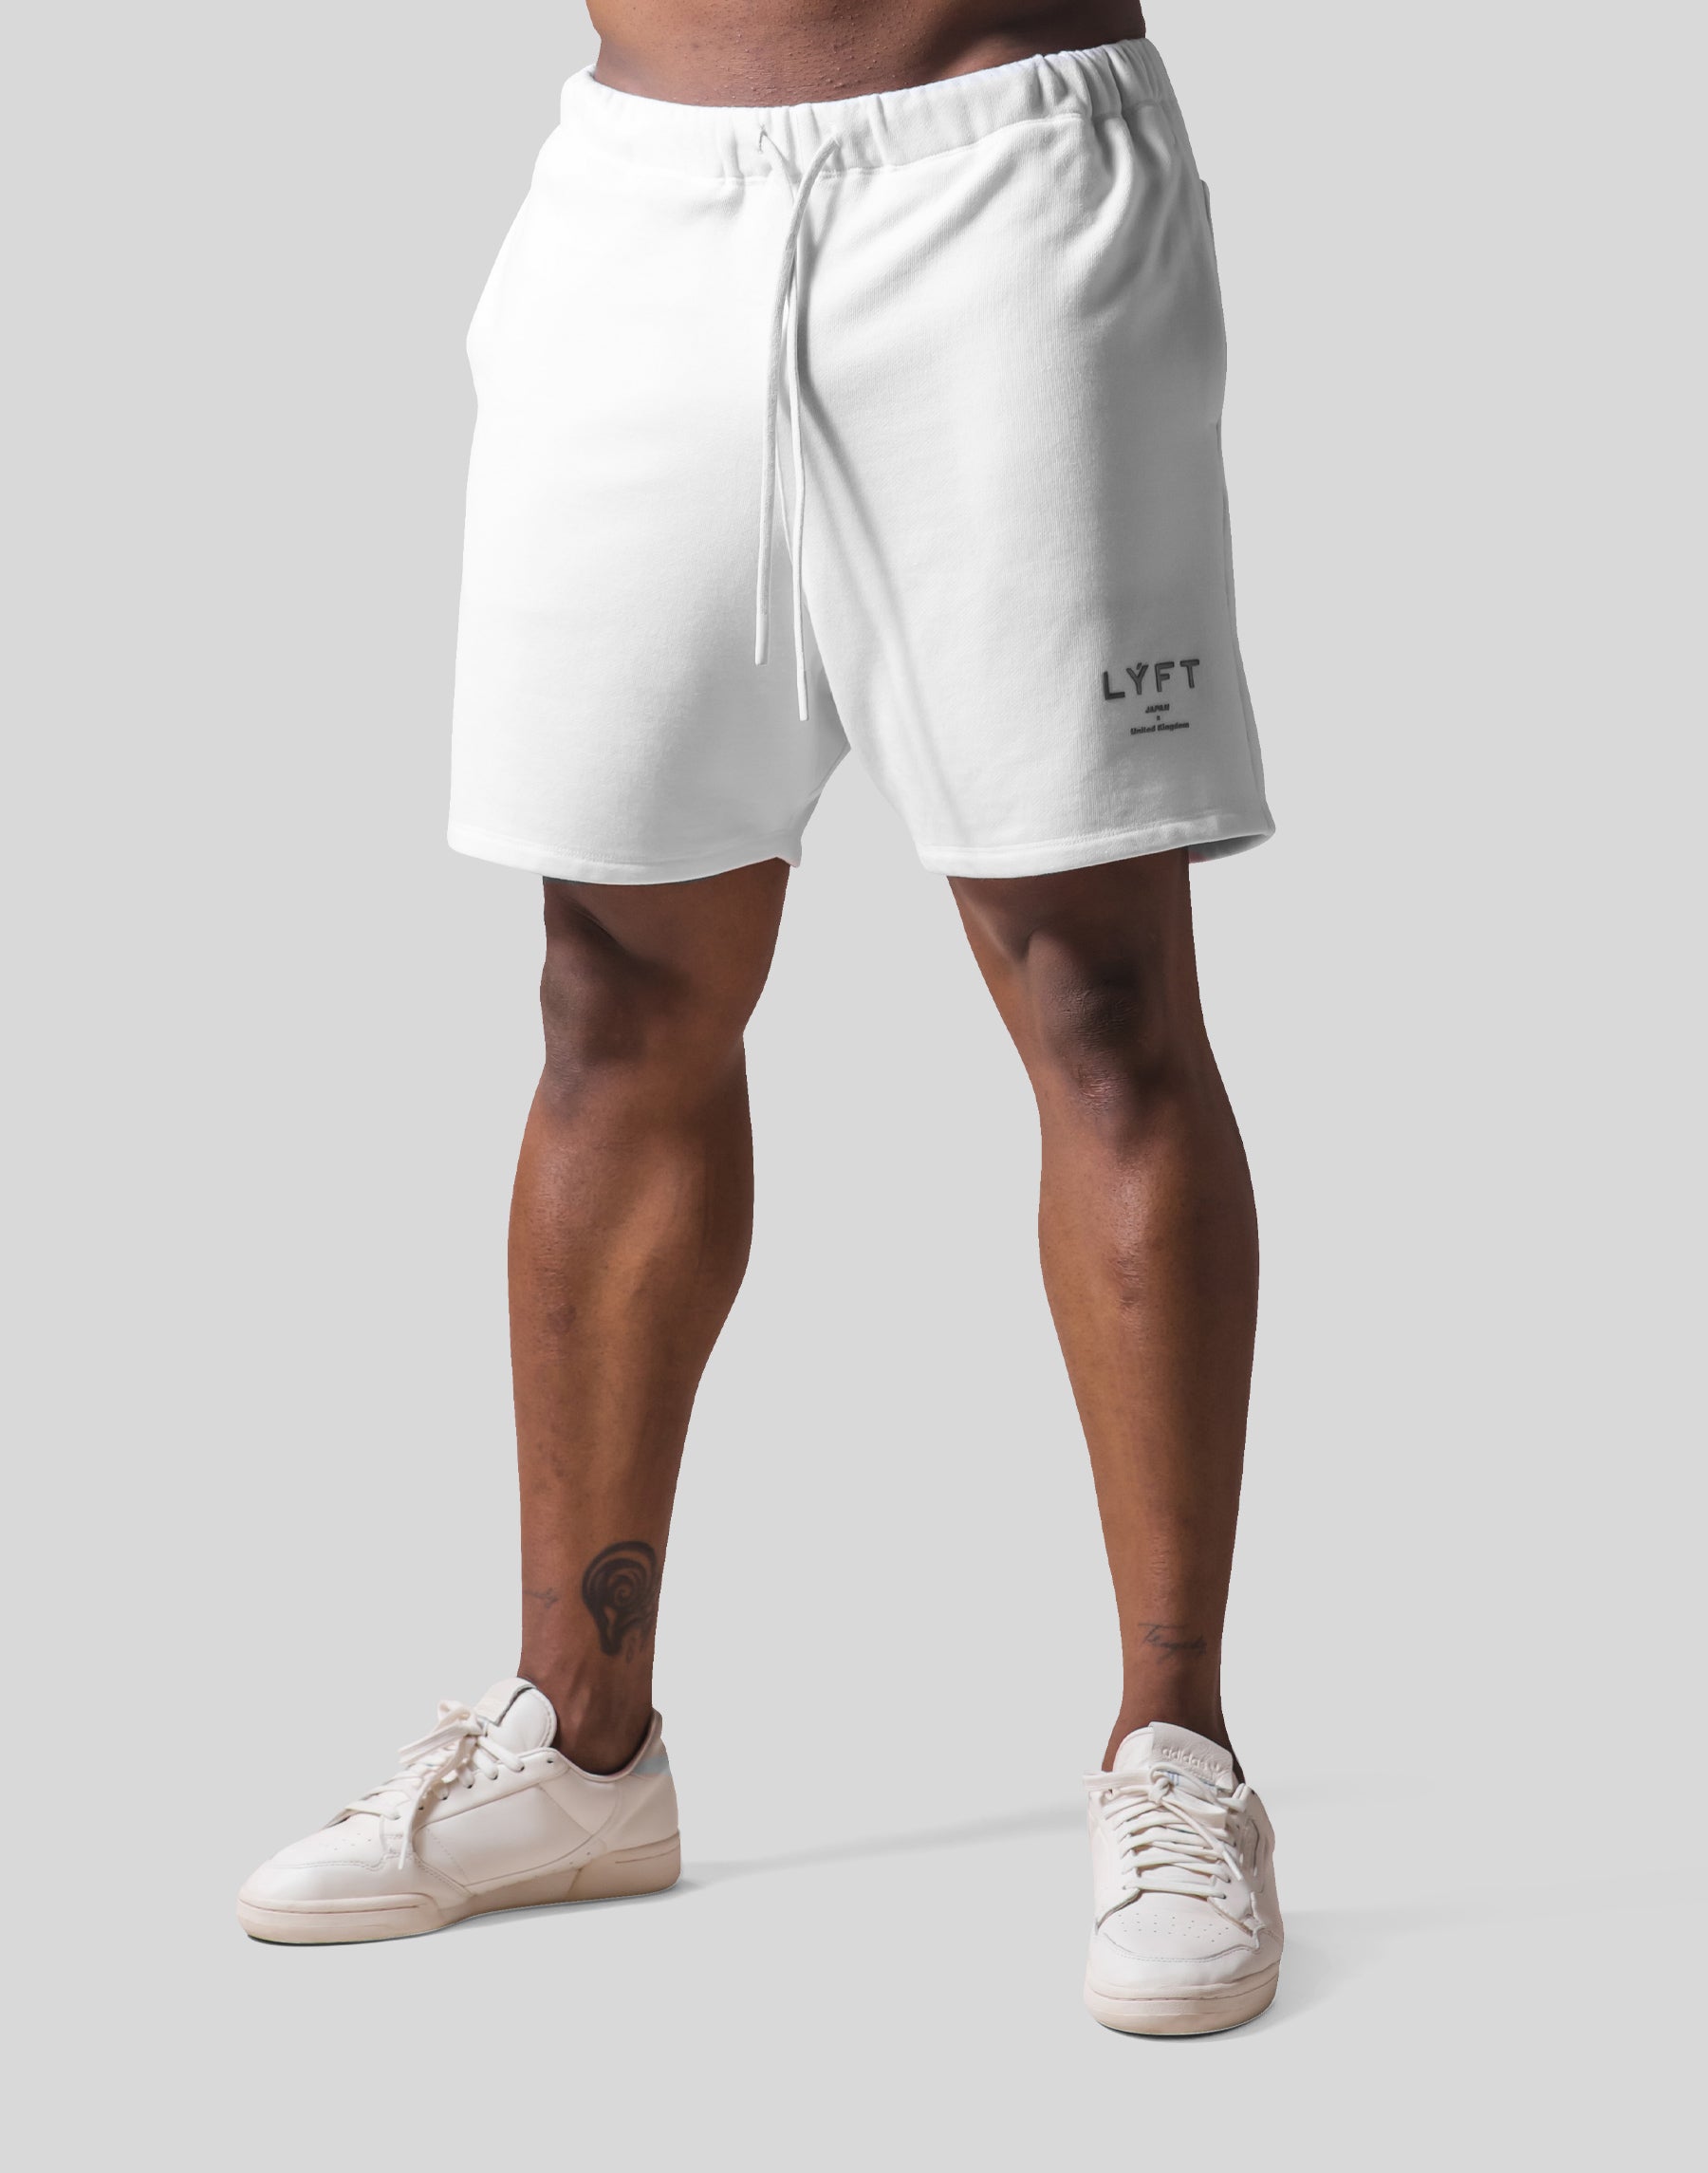 Sweat shorts-www.mwasaving.com